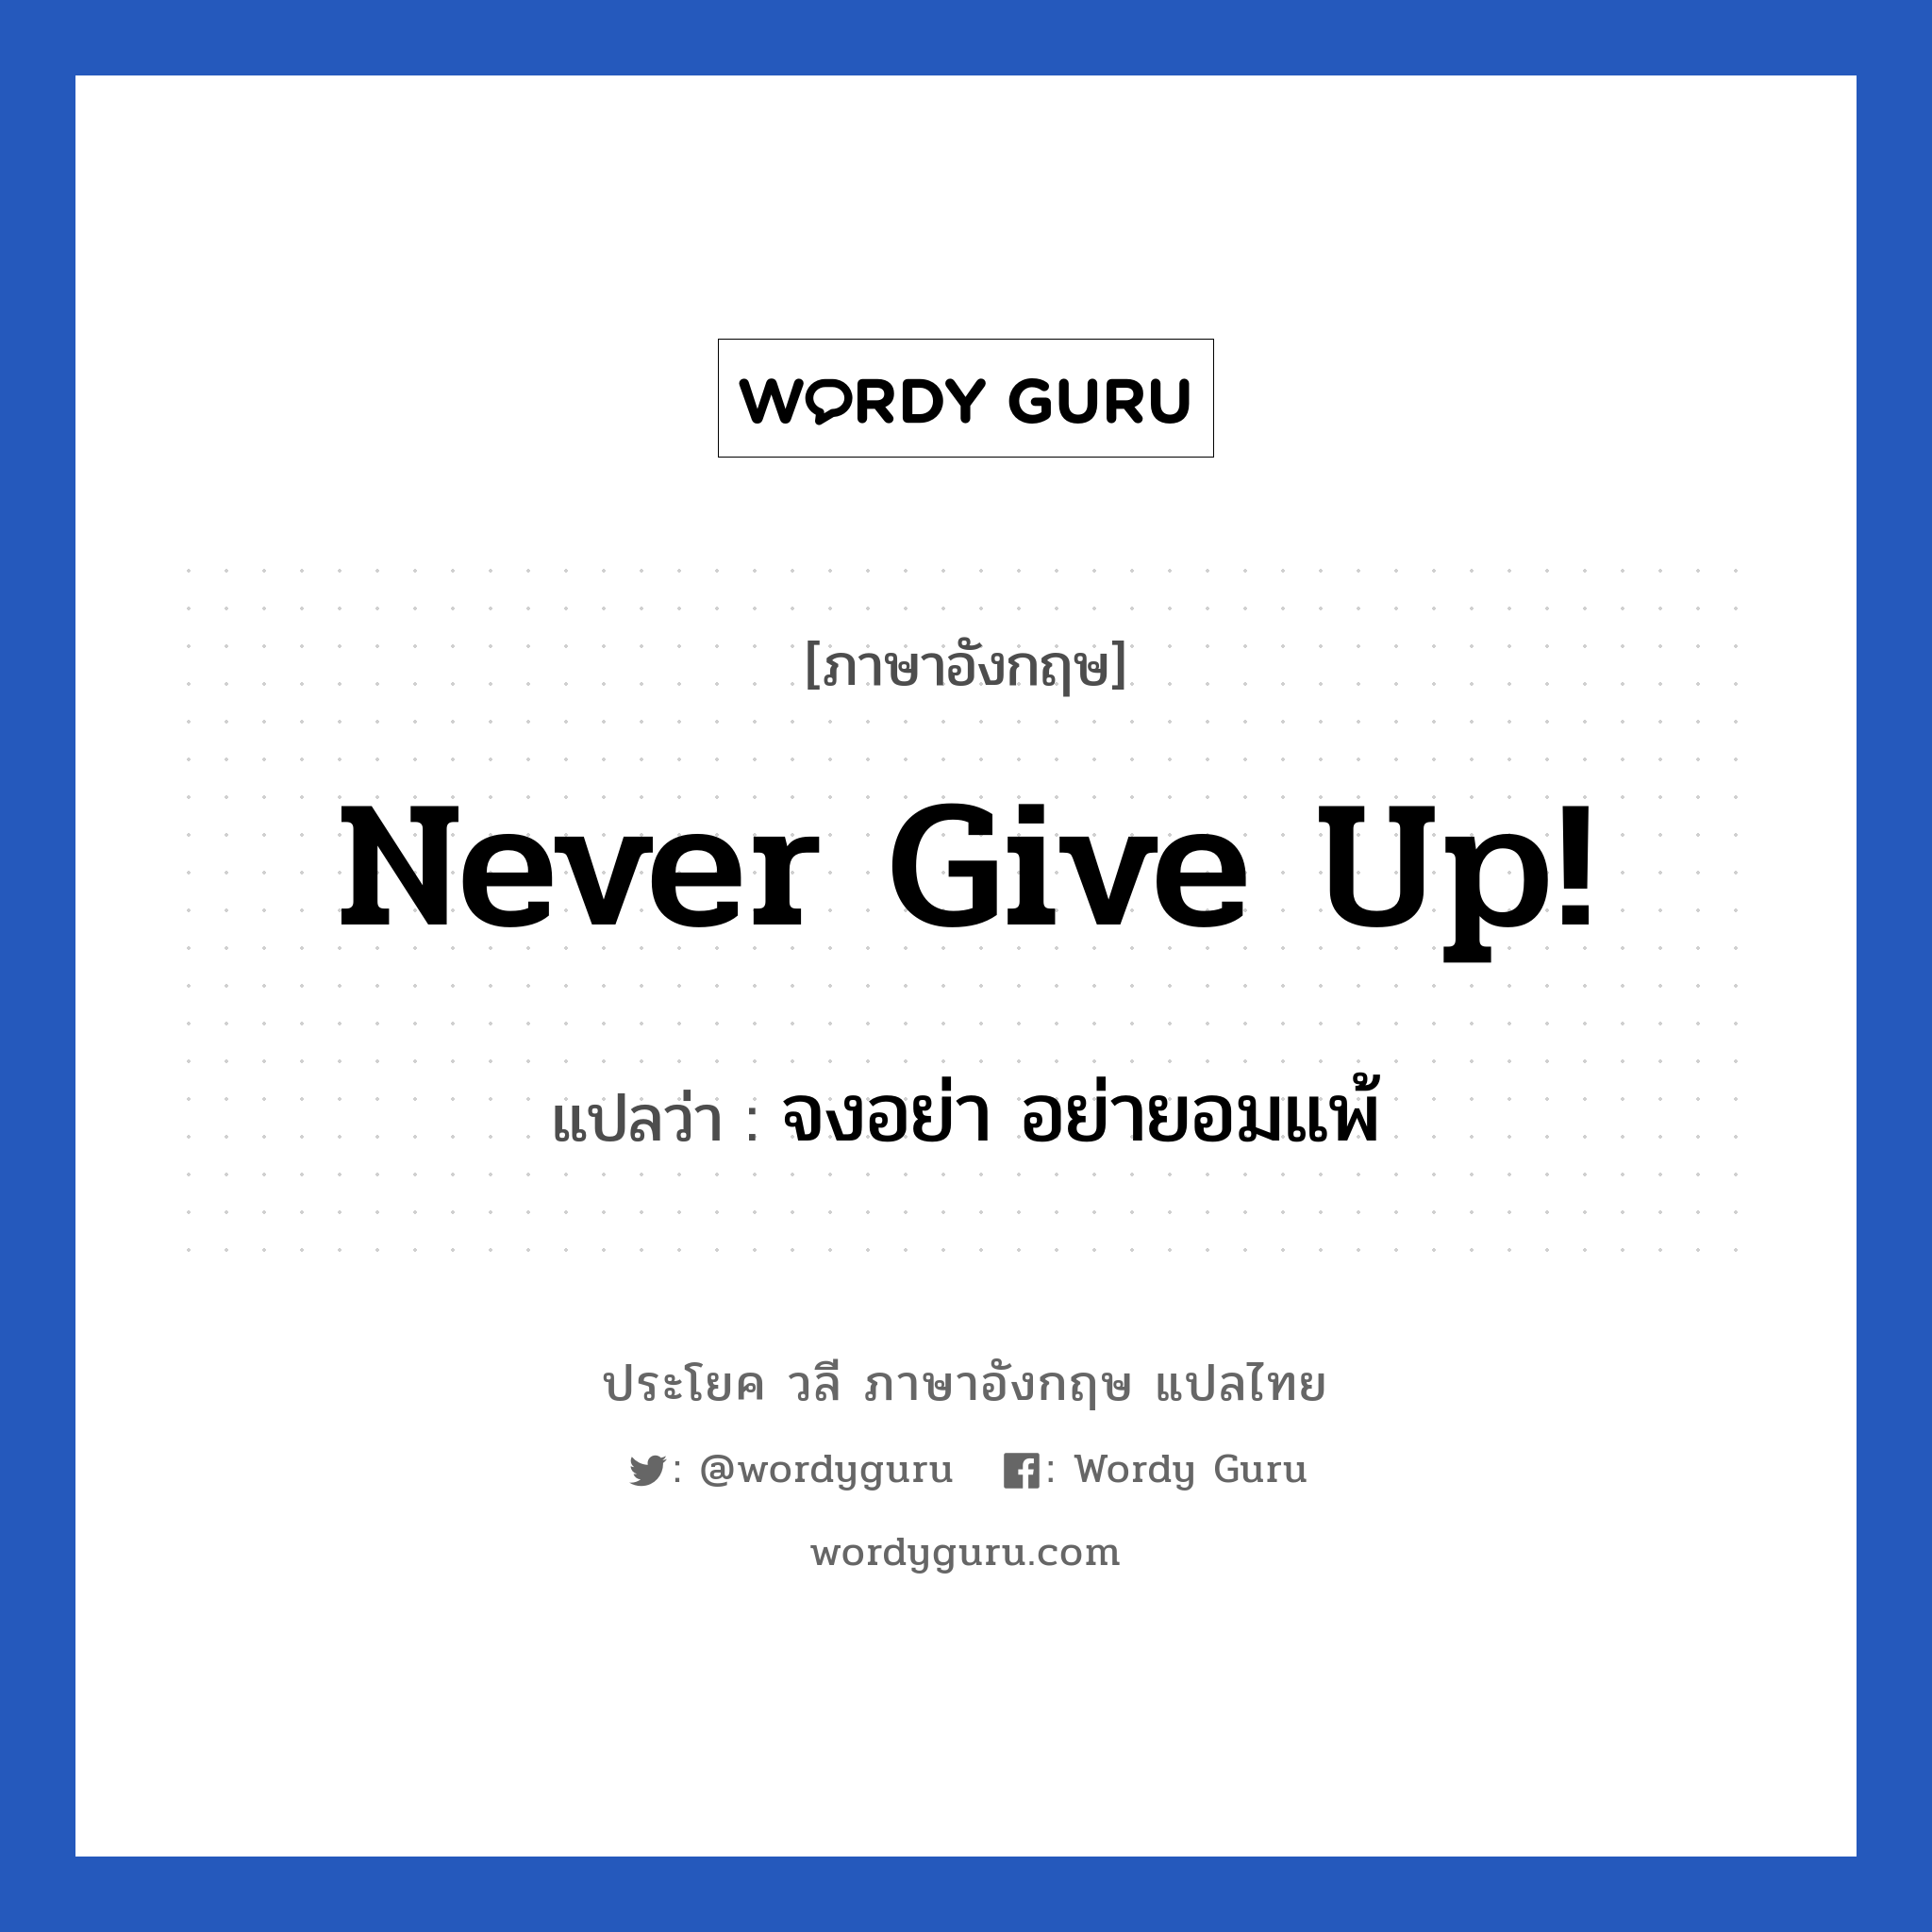 Never give up! แปลว่า?, วลีภาษาอังกฤษ Never give up! แปลว่า จงอย่า อย่ายอมแพ้ หมวด ให้กำลังใจ